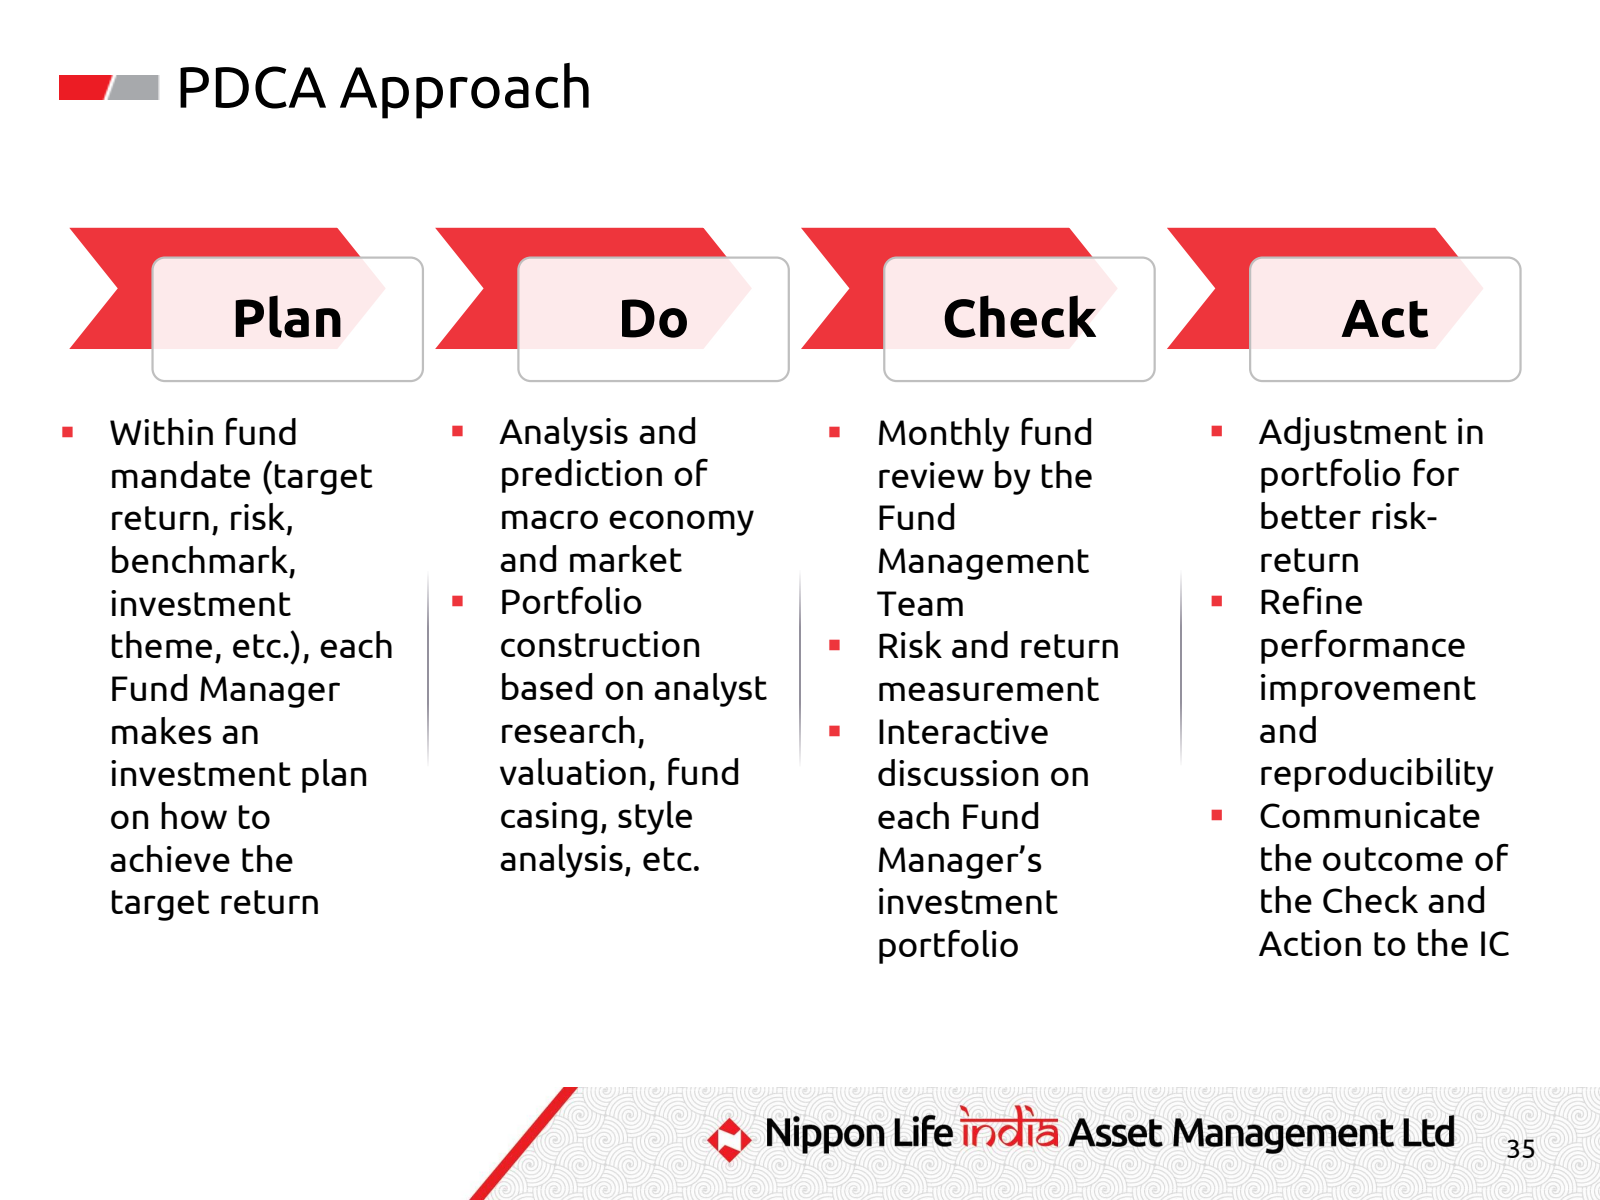 PDCA Approach 

Plan